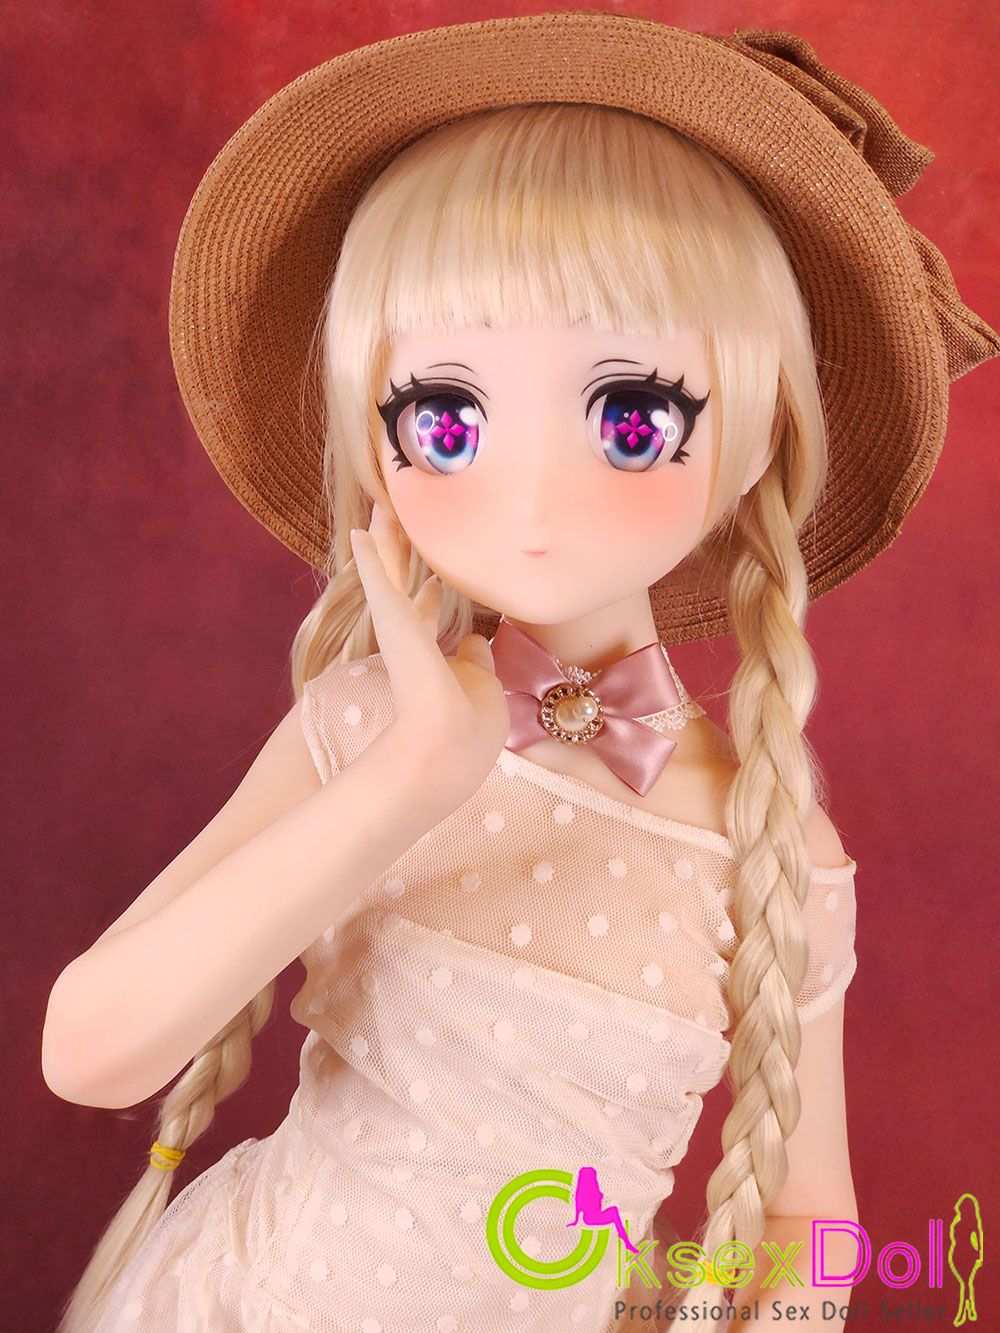 Anime Love Doll Photos of 『Rosalie』